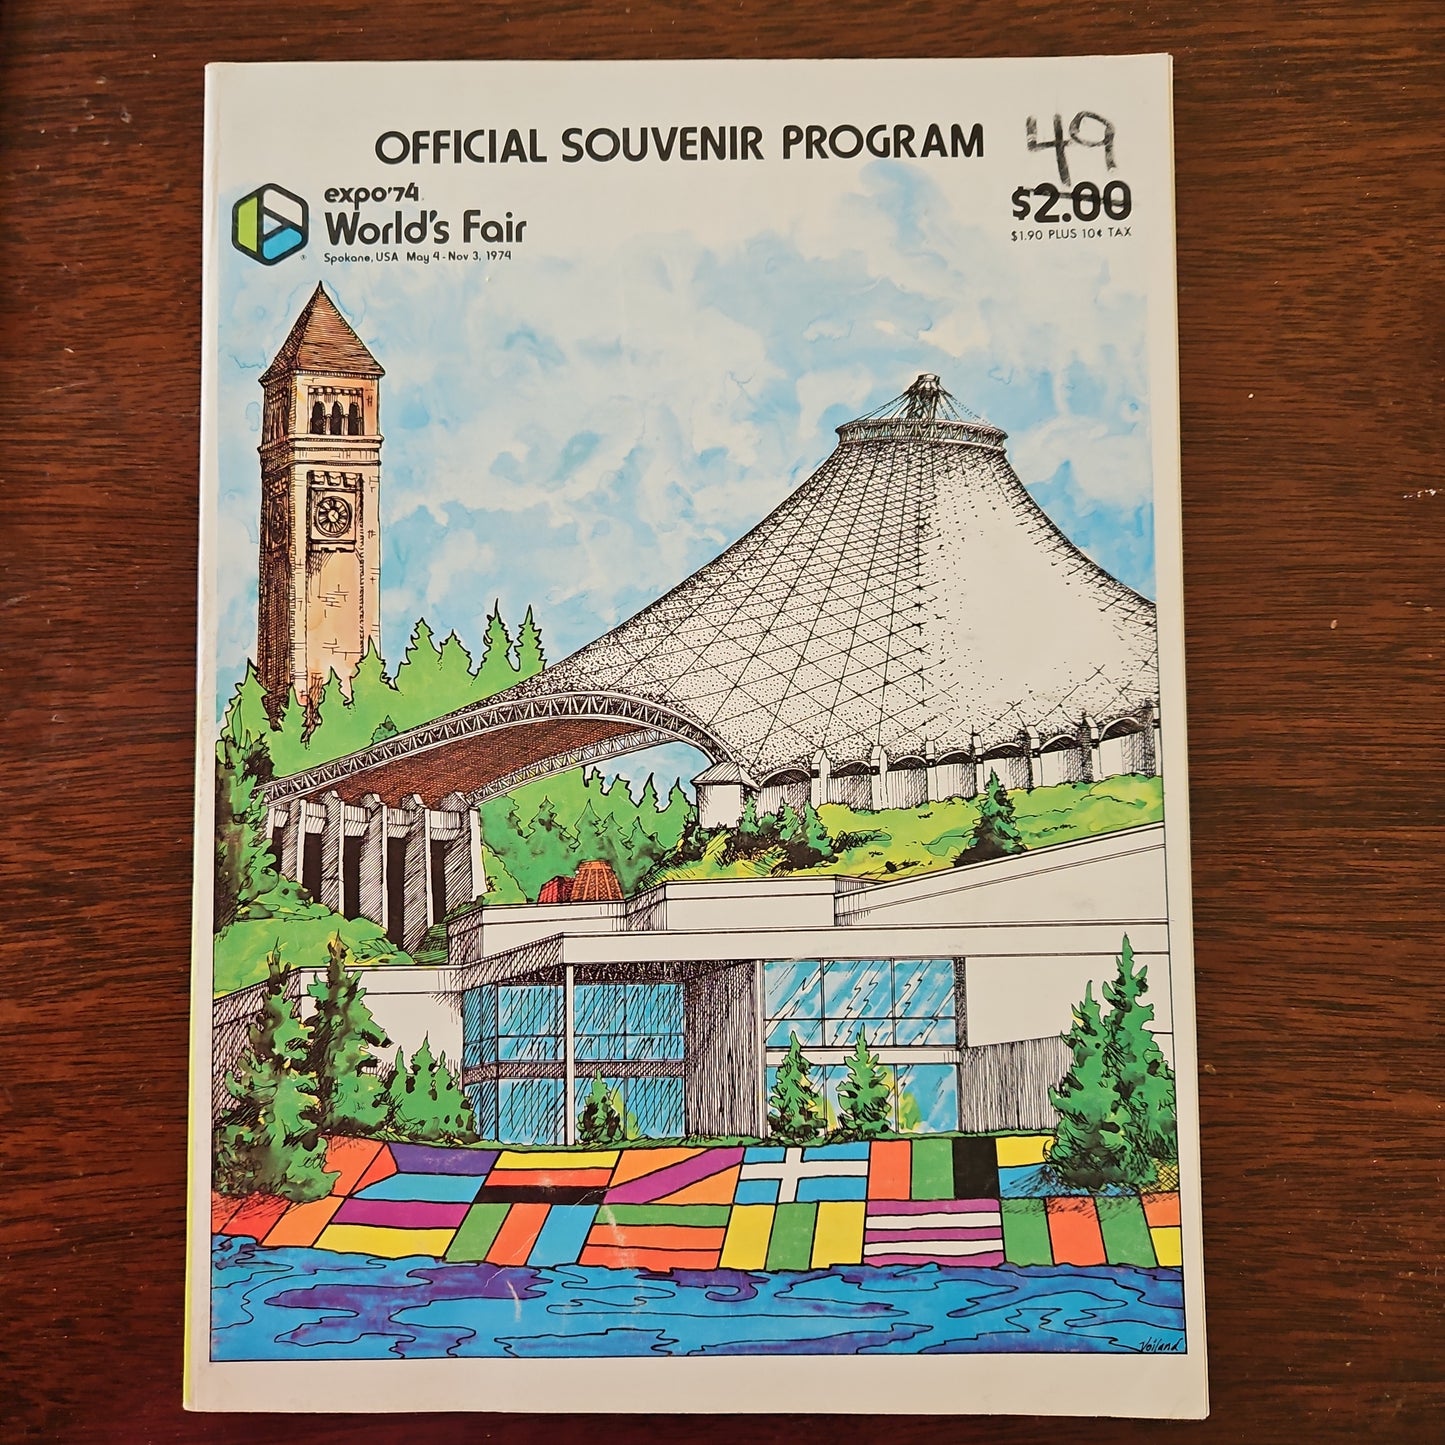 Official Souvenir Program Spokane's World's Fair EXPO '74